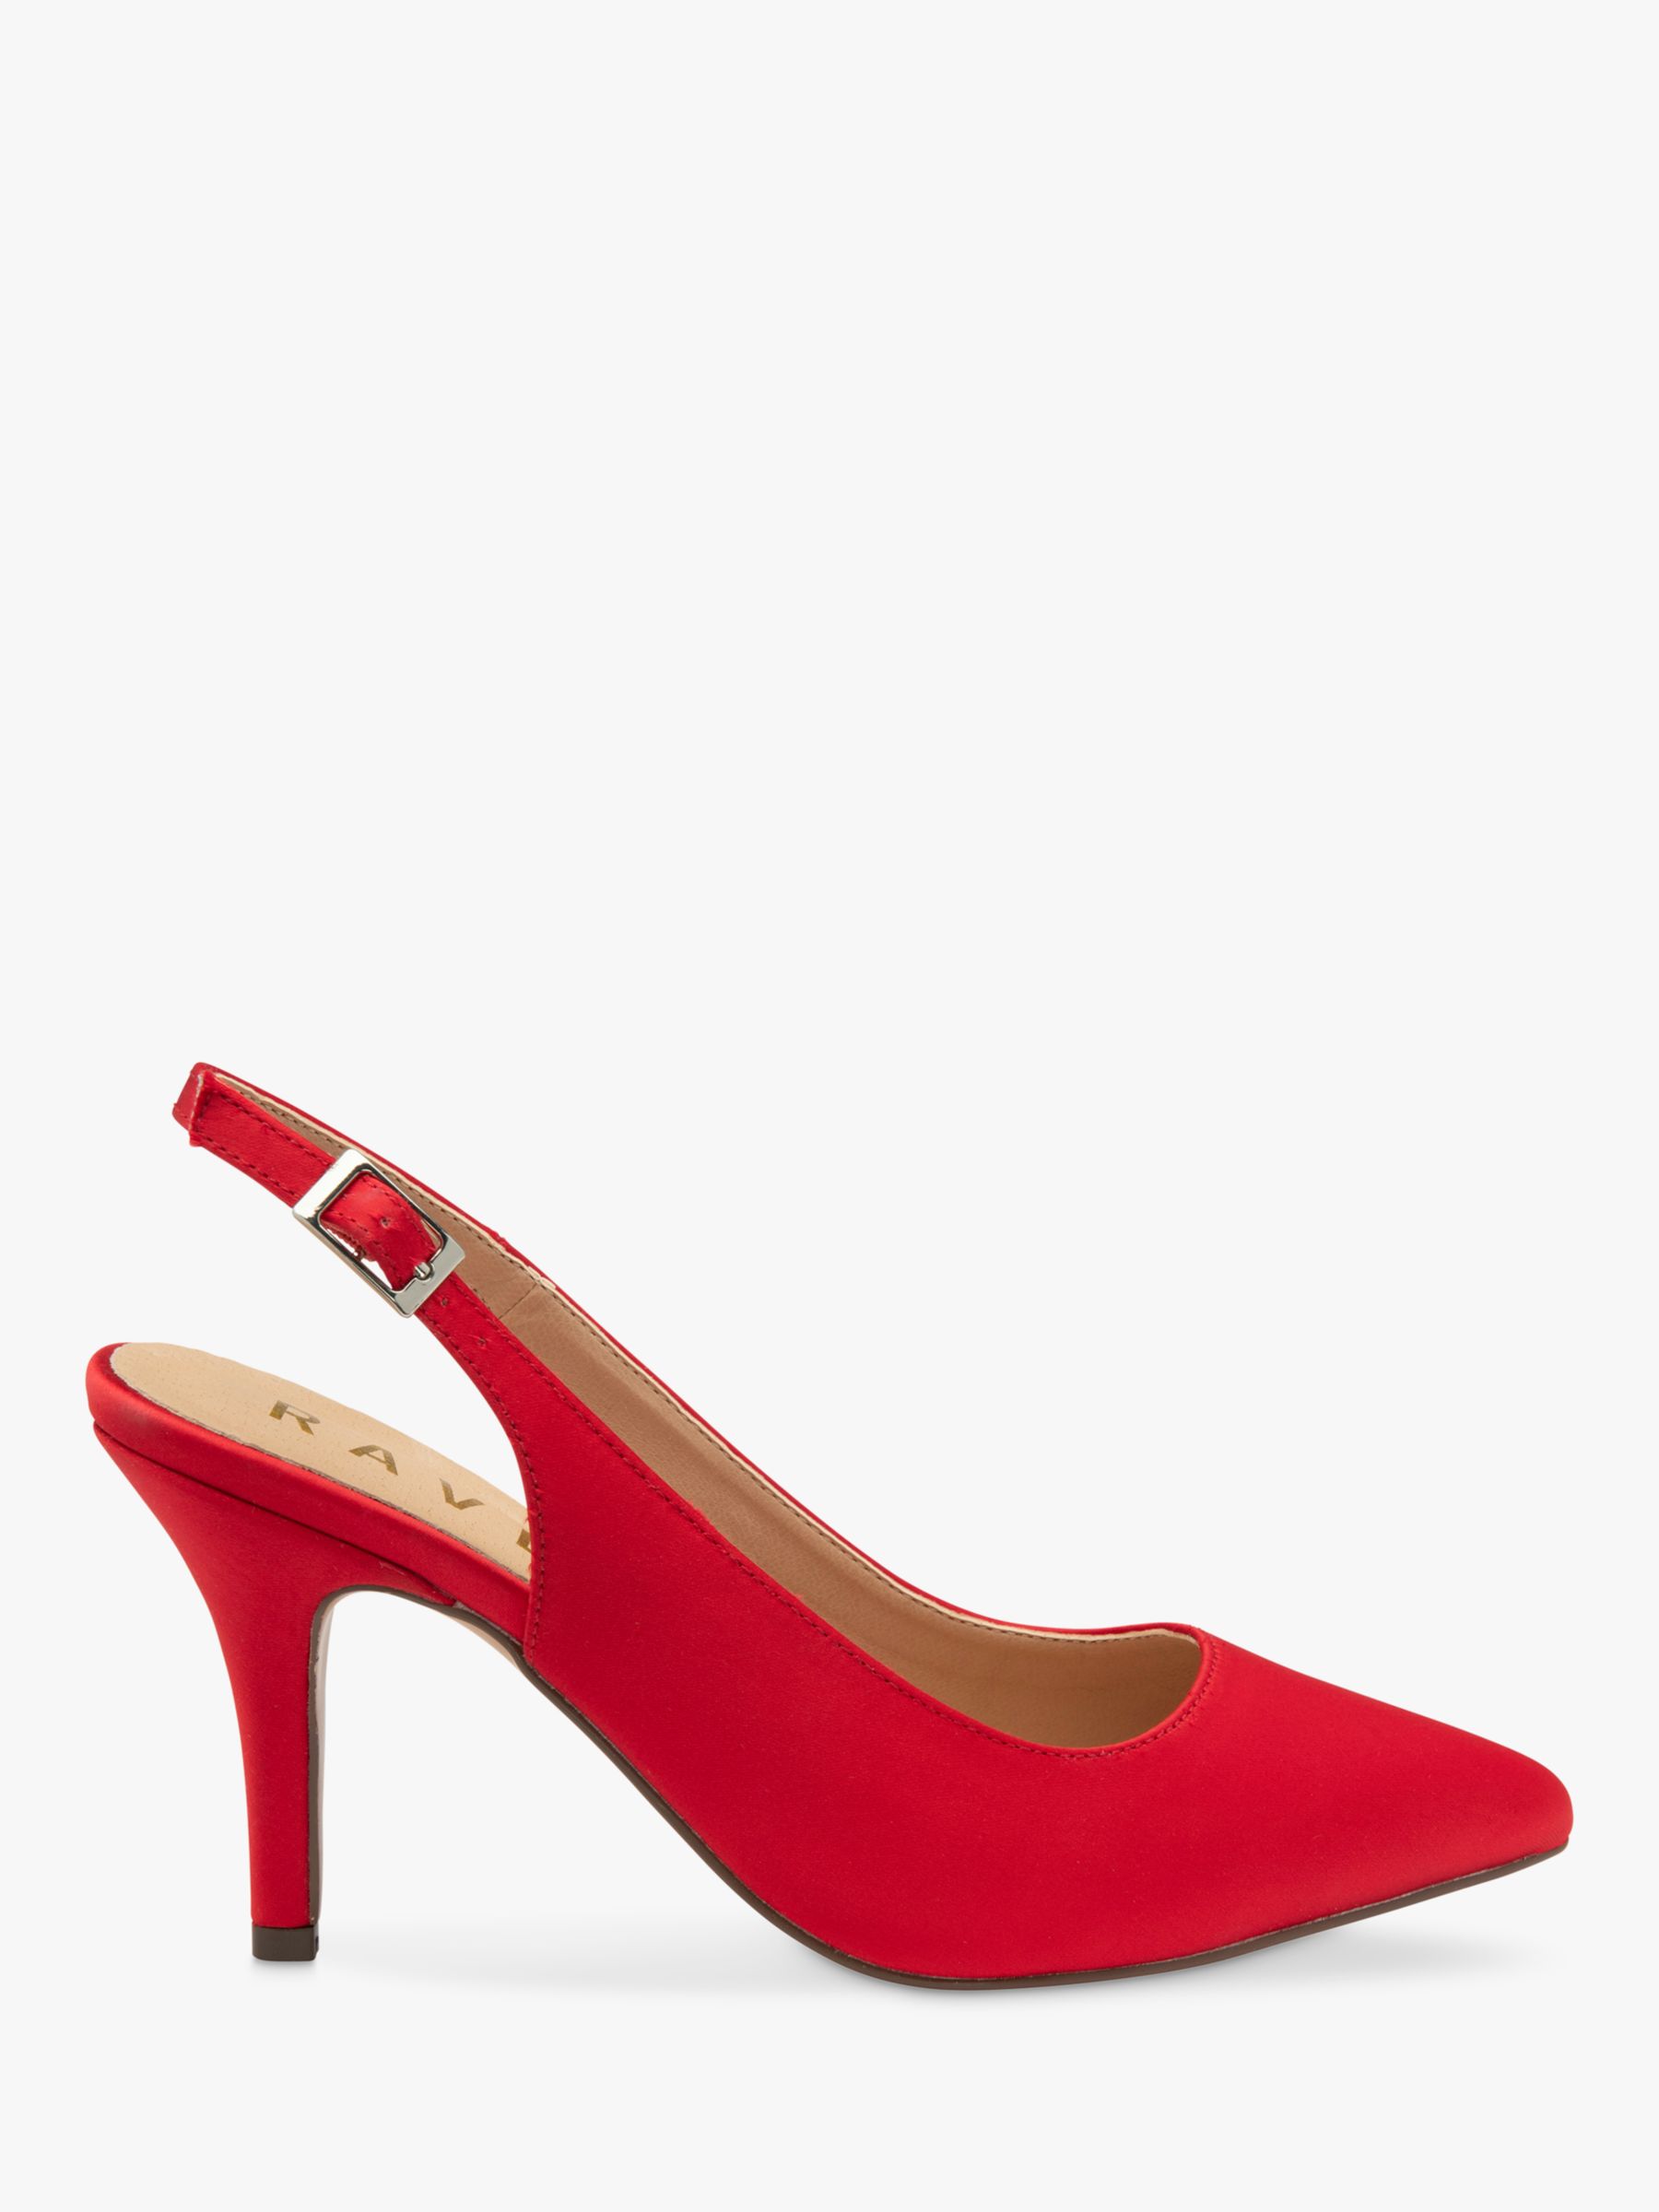 Ravel Kavan Satin Stiletto Heel Slingback Court Shoes, Red, 7